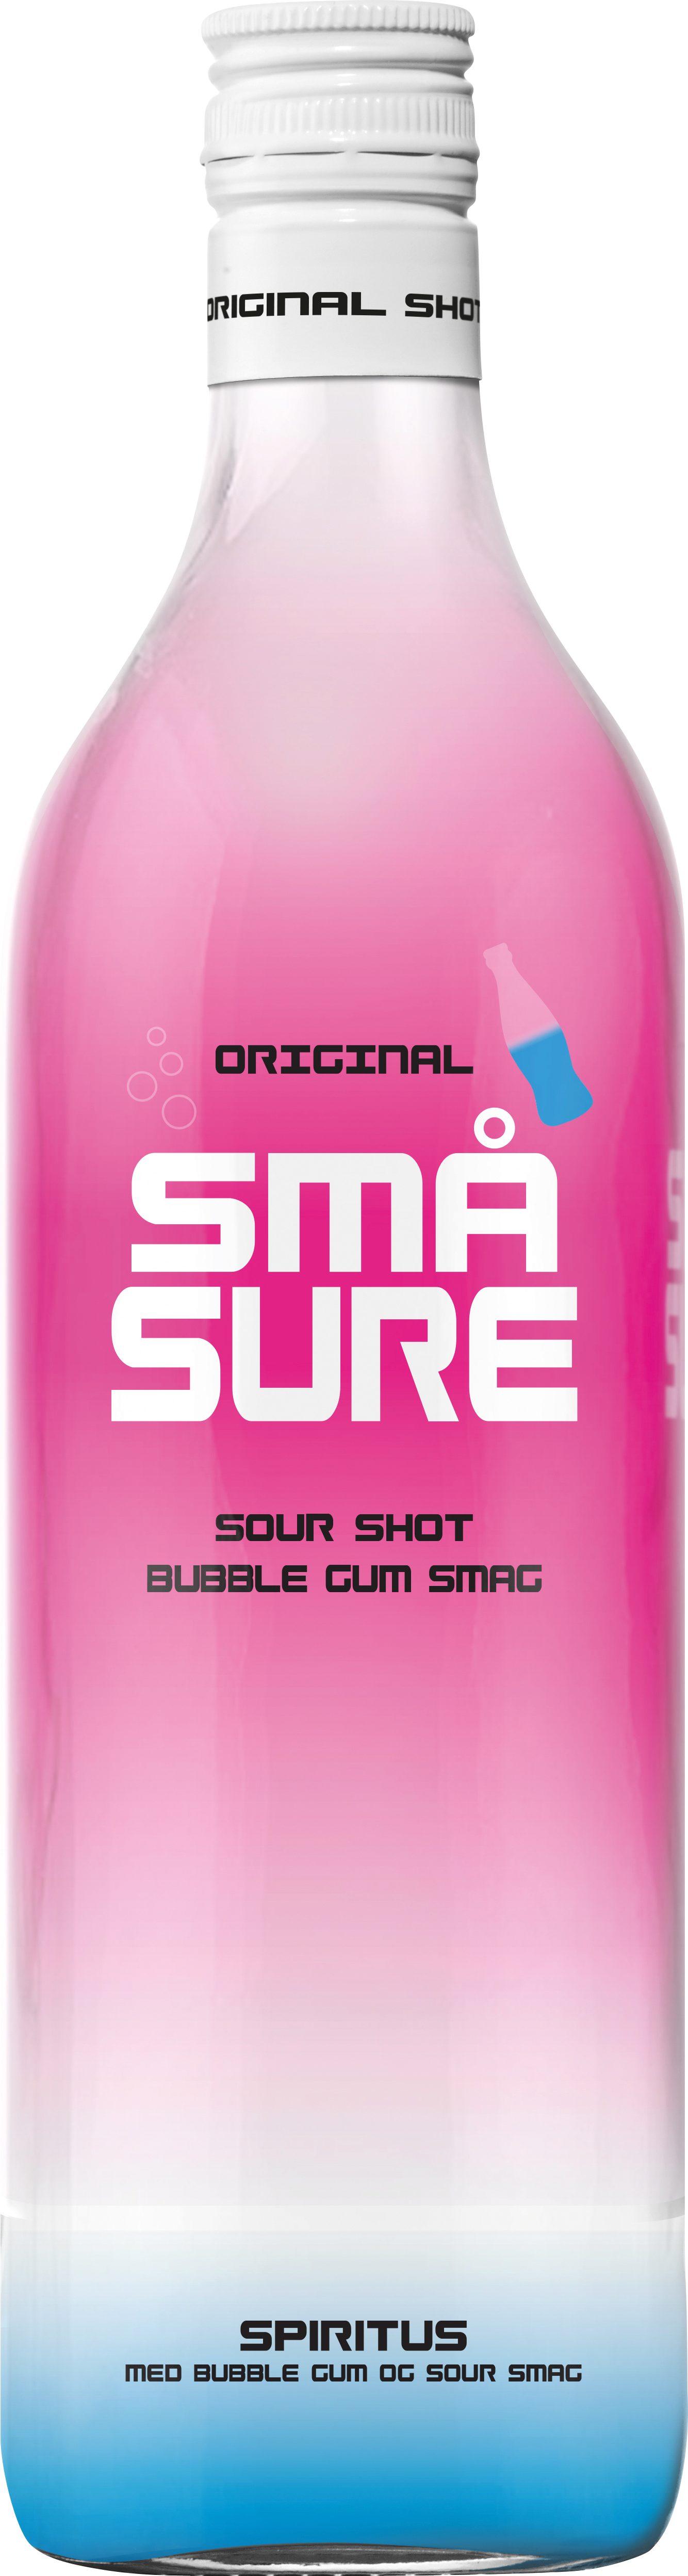 Små Sure Bubble Gum 16,4% 100 Cl - Små Sure Med Bubblegum (1334x4993), Png Download